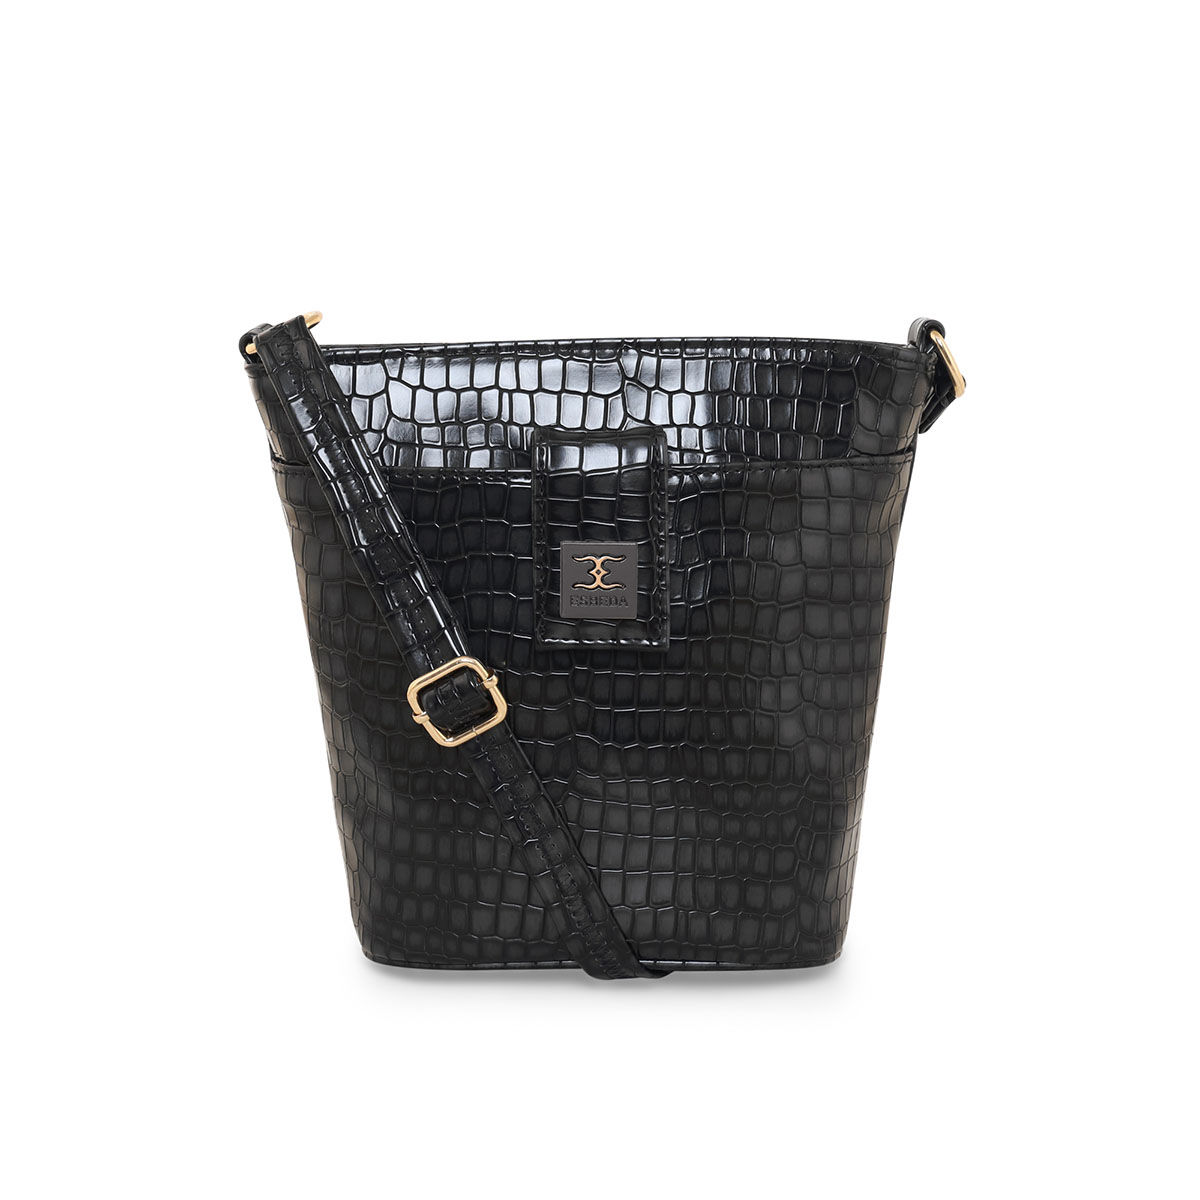 Buy Esbeda Women's Slingbag - Black (MSA01_1367) Online